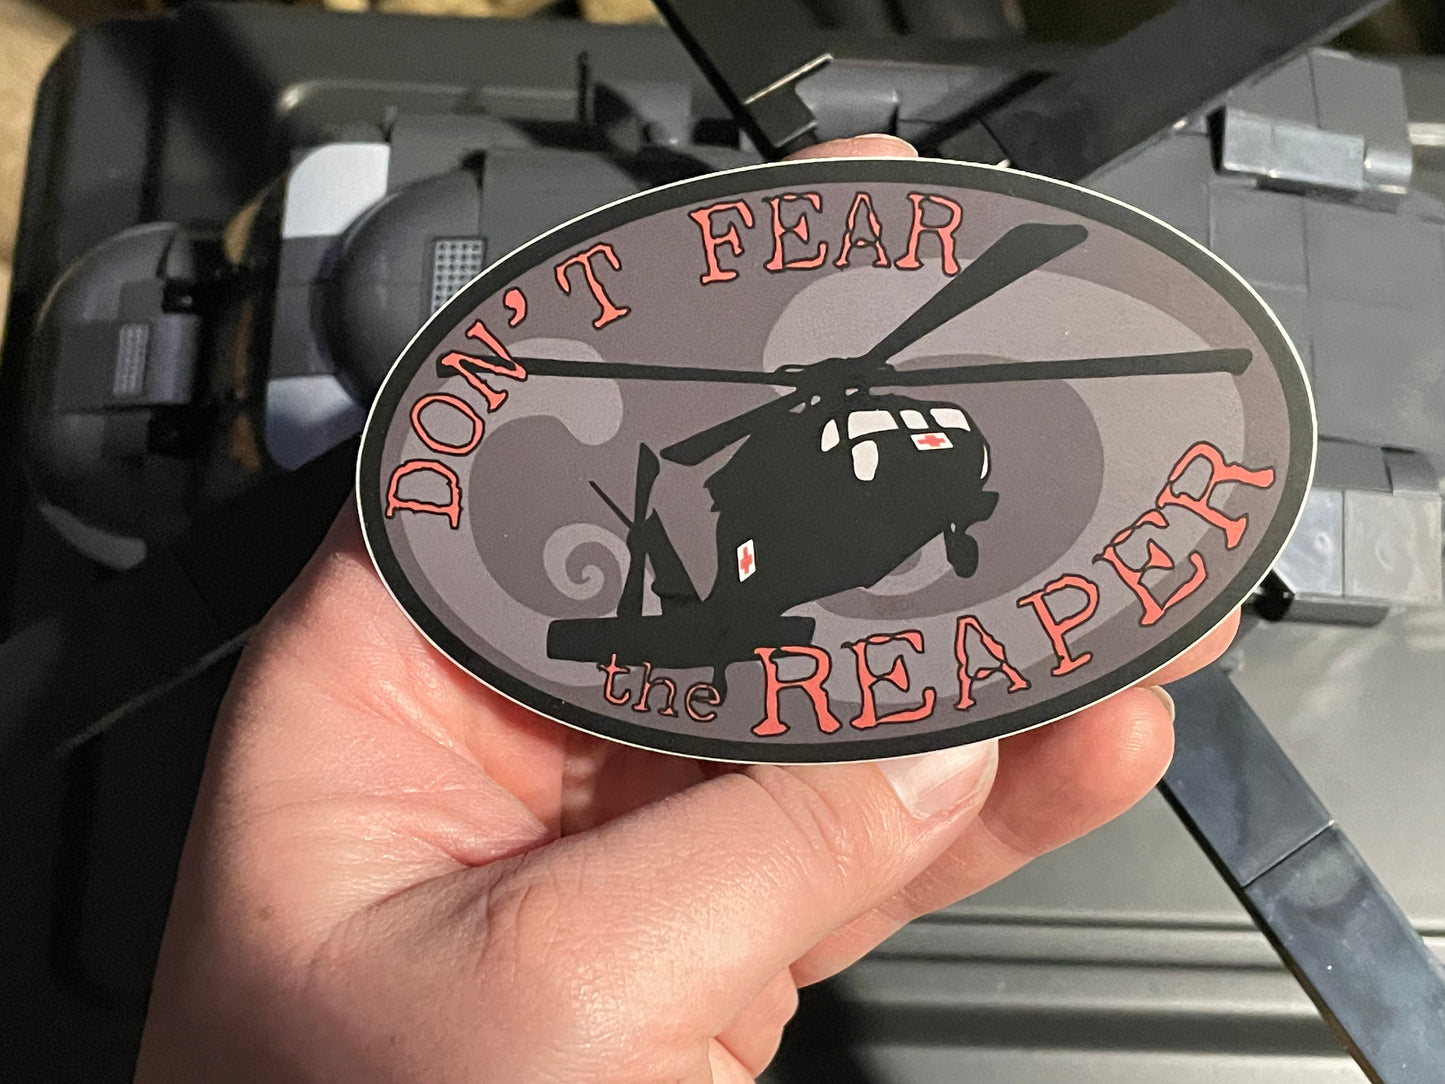 UH-60 Blackhawk Dustoff “Don’t Fear The Reaper” Sticker